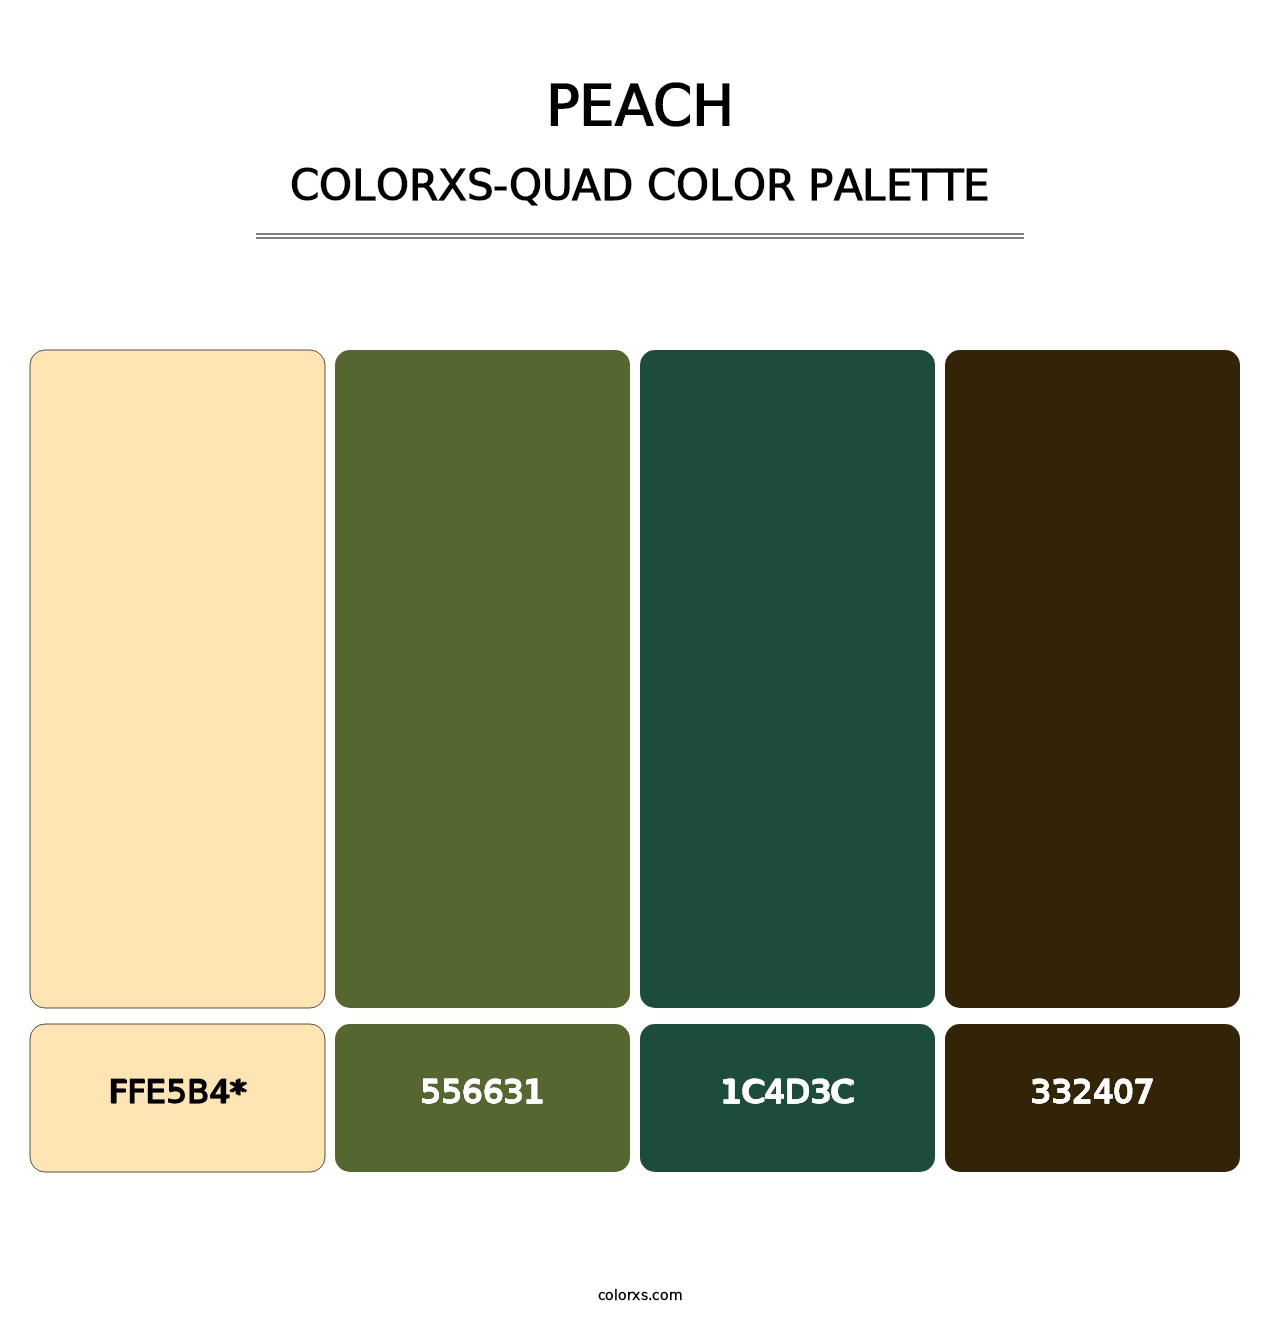 Peach - Colorxs Quad Palette